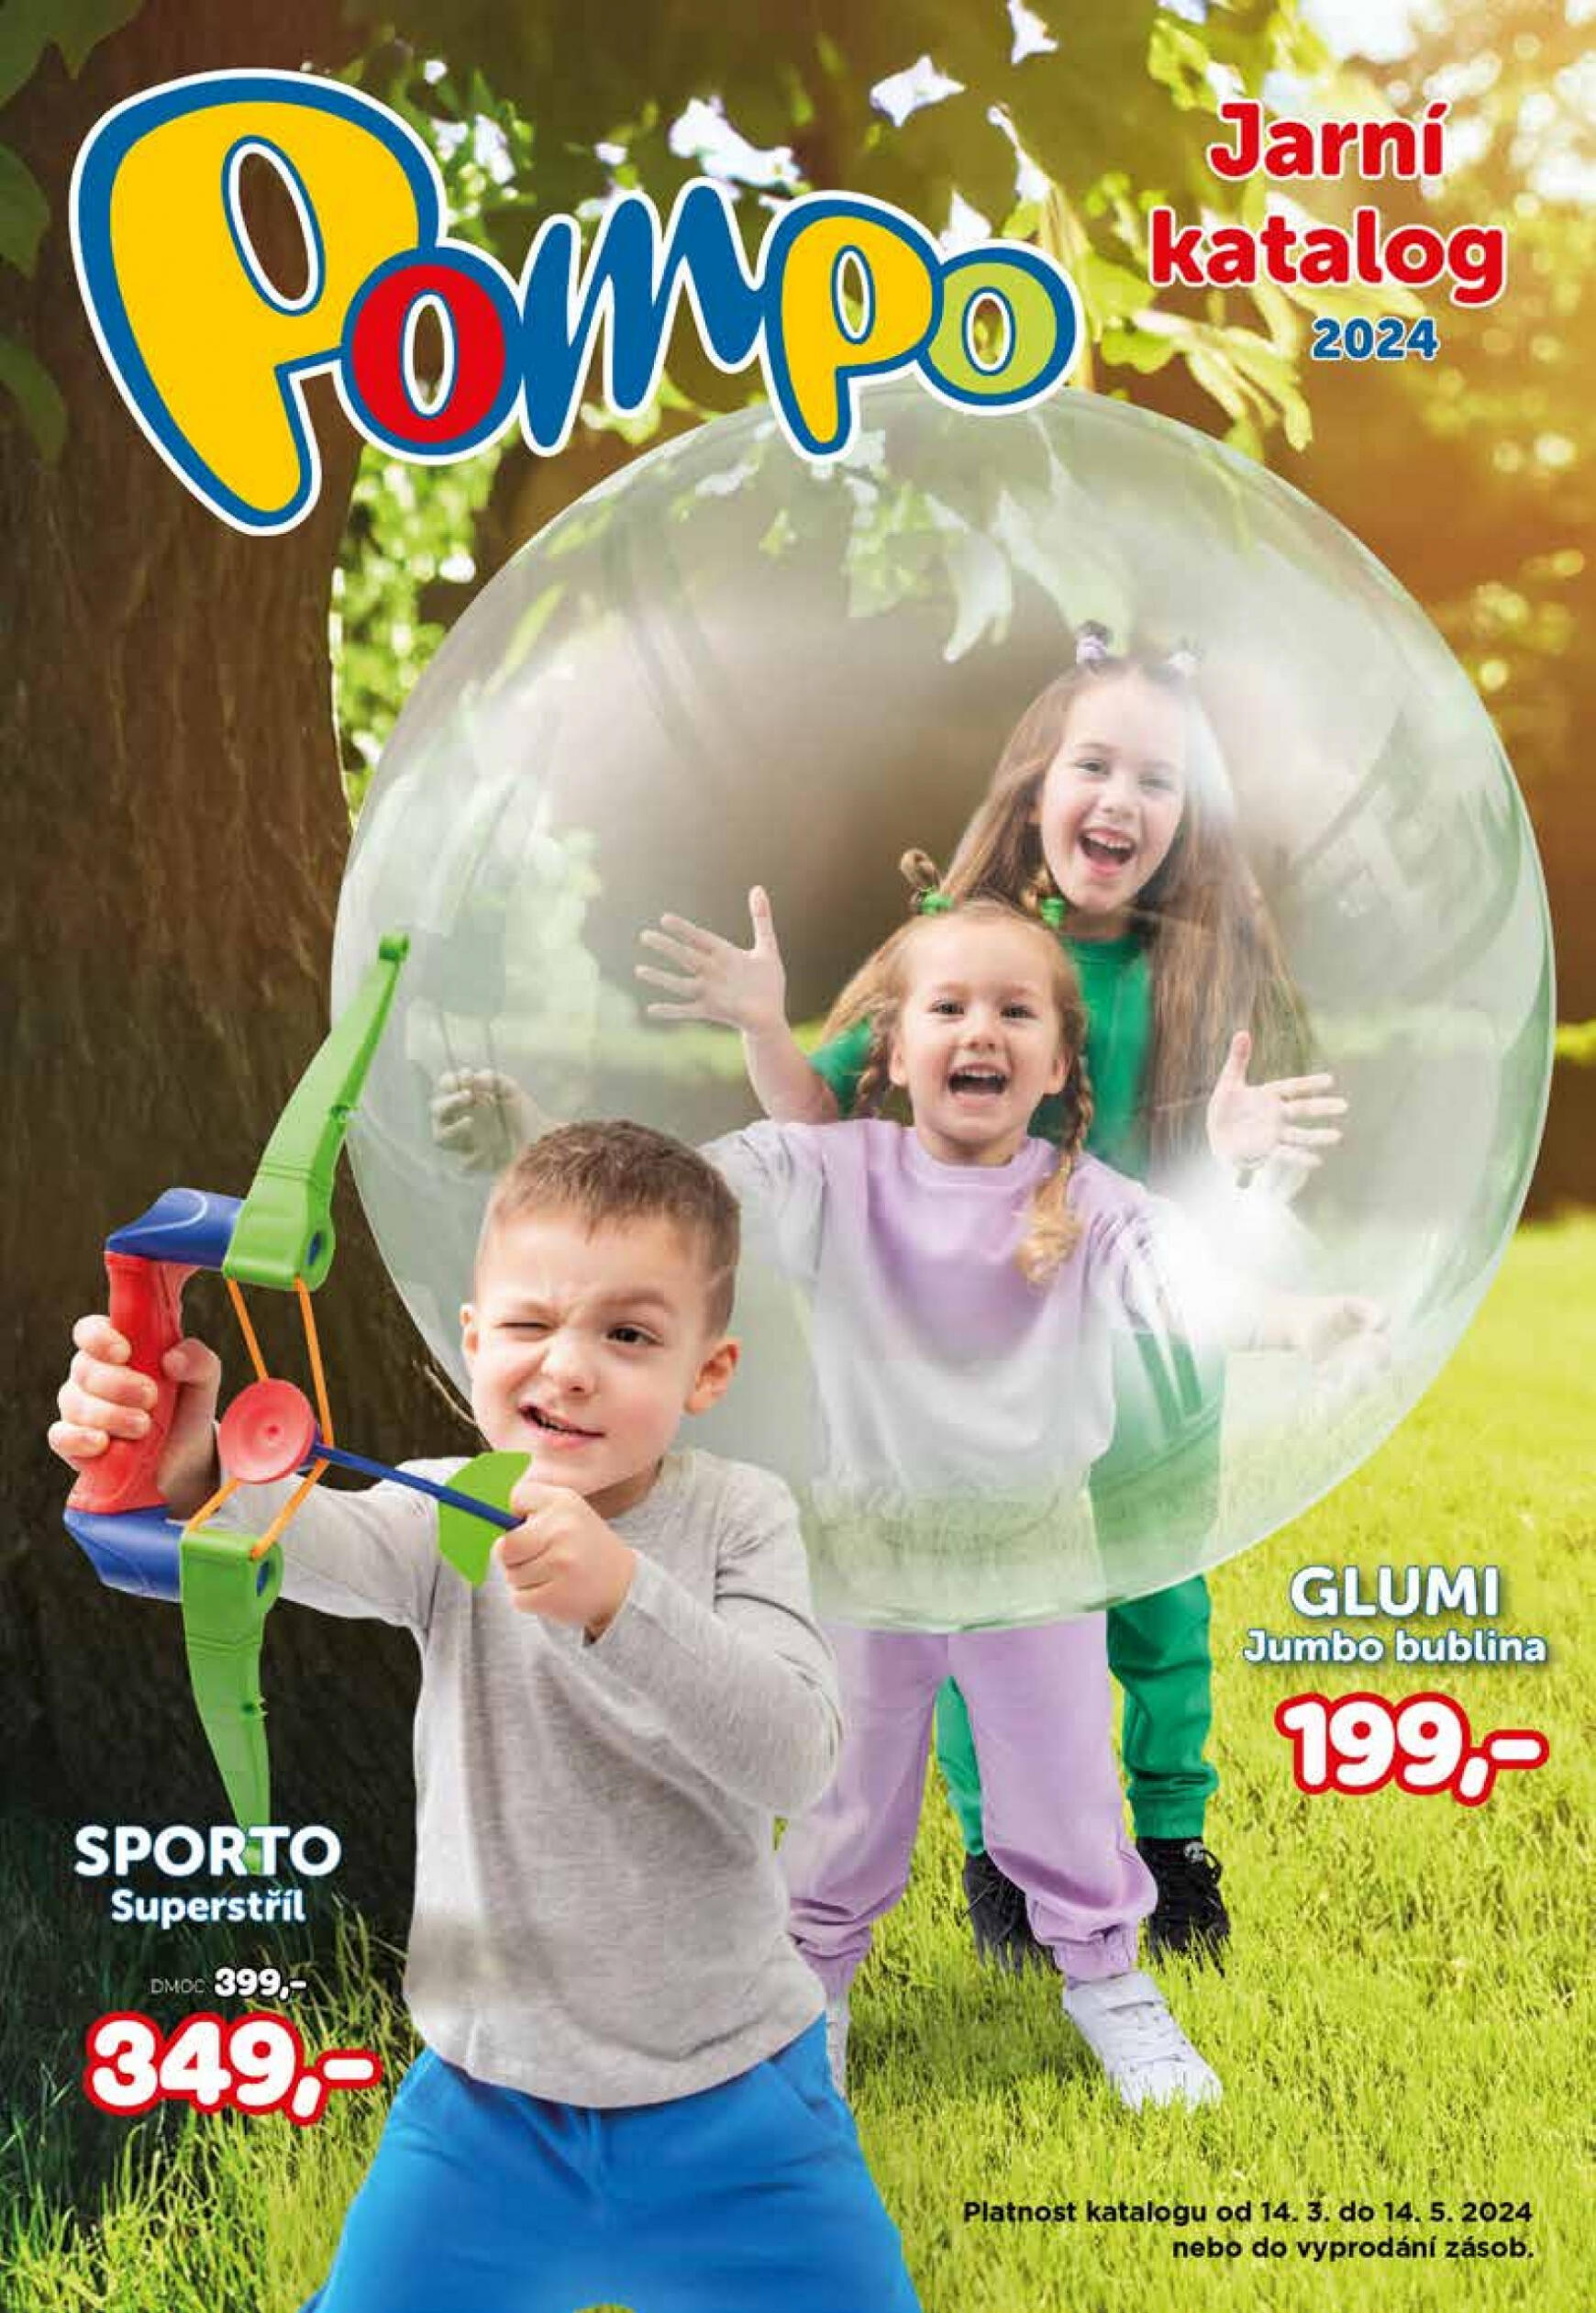 pompo - Pompo - Jarní katalog platný od 14.03.2024 - page: 1